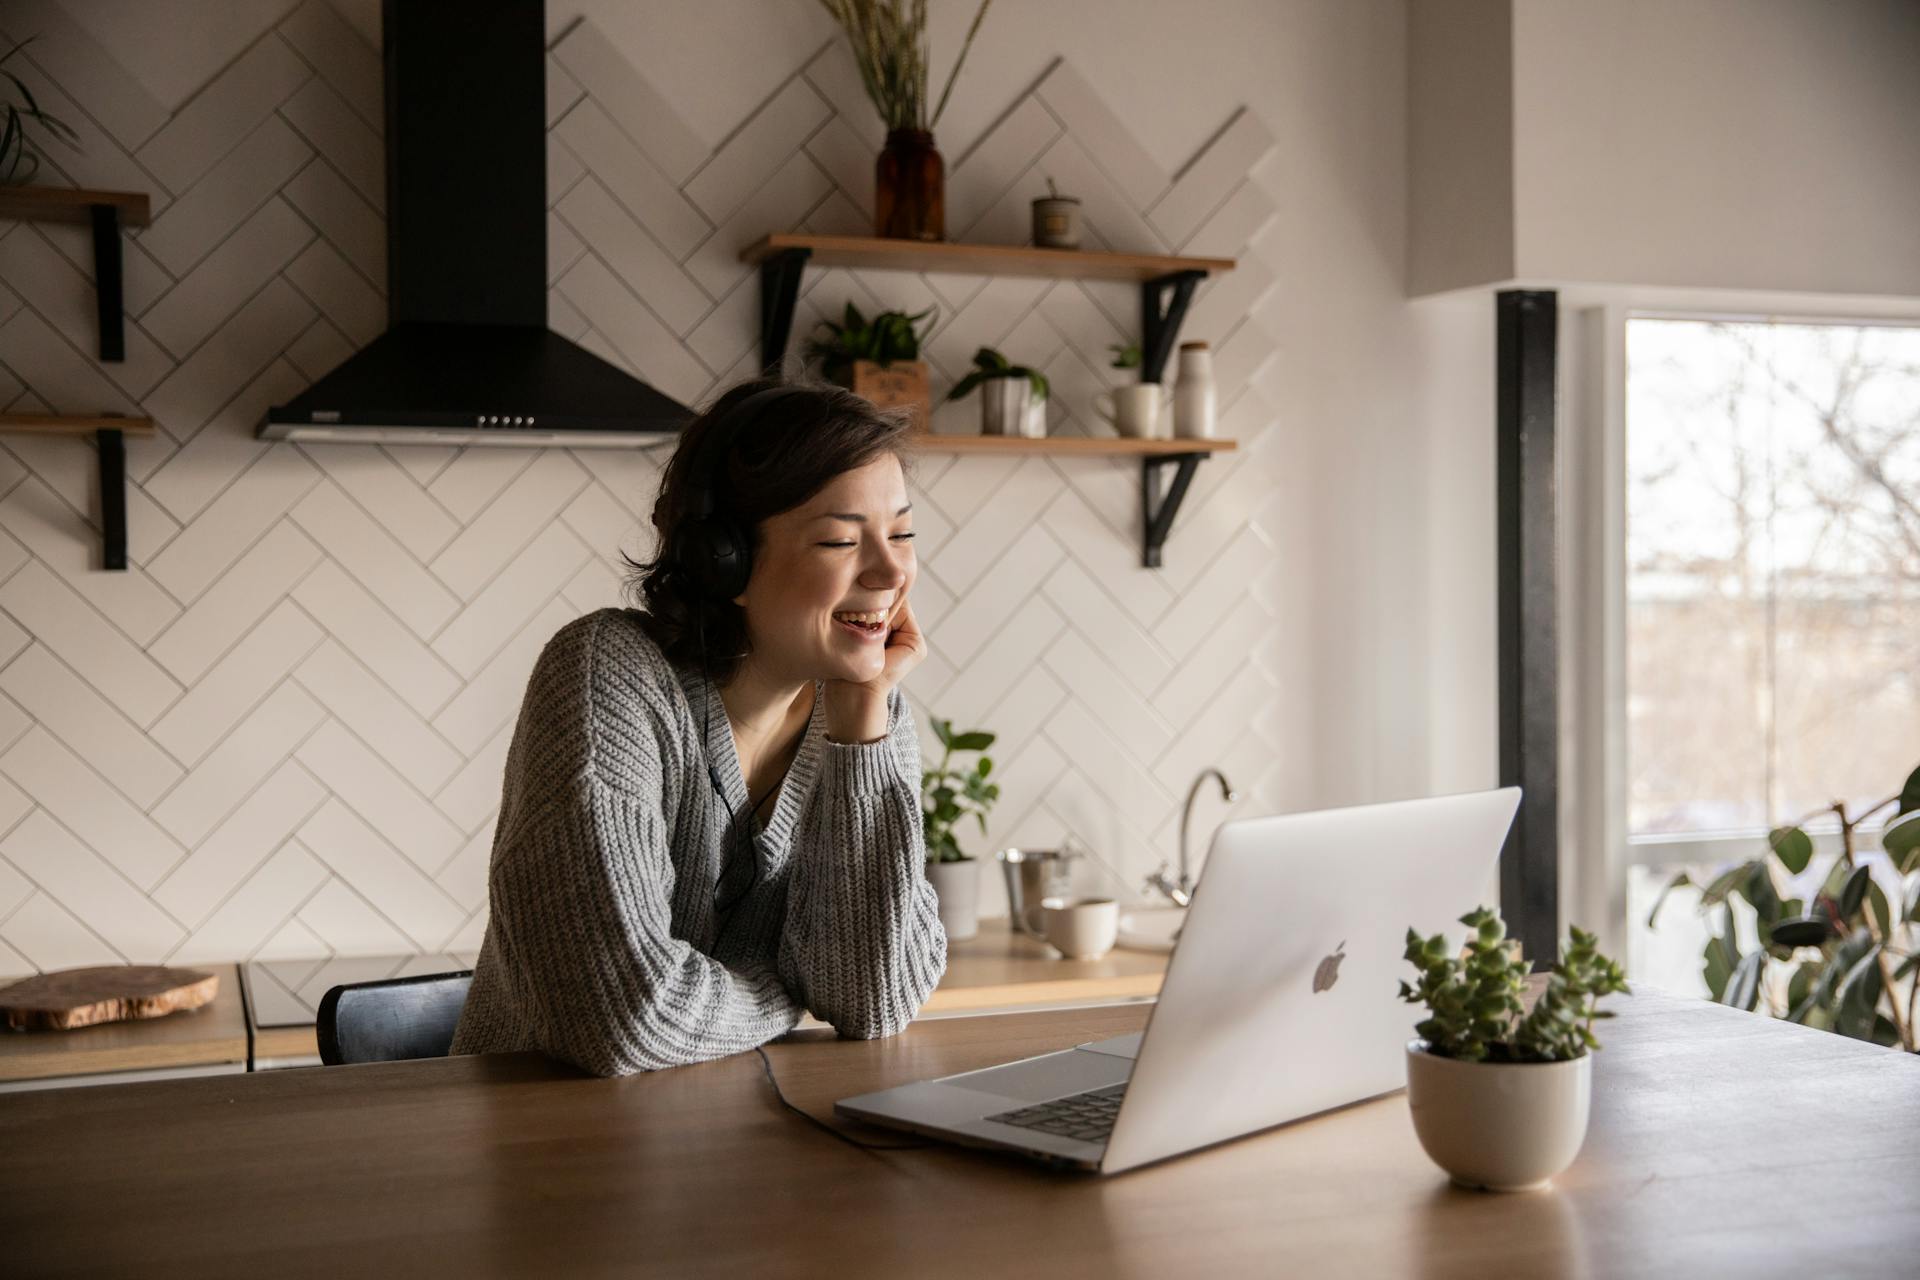 Une femme souriante parle via un ordinateur portable alors qu'elle est assise dans la cuisine | Source : Pexels